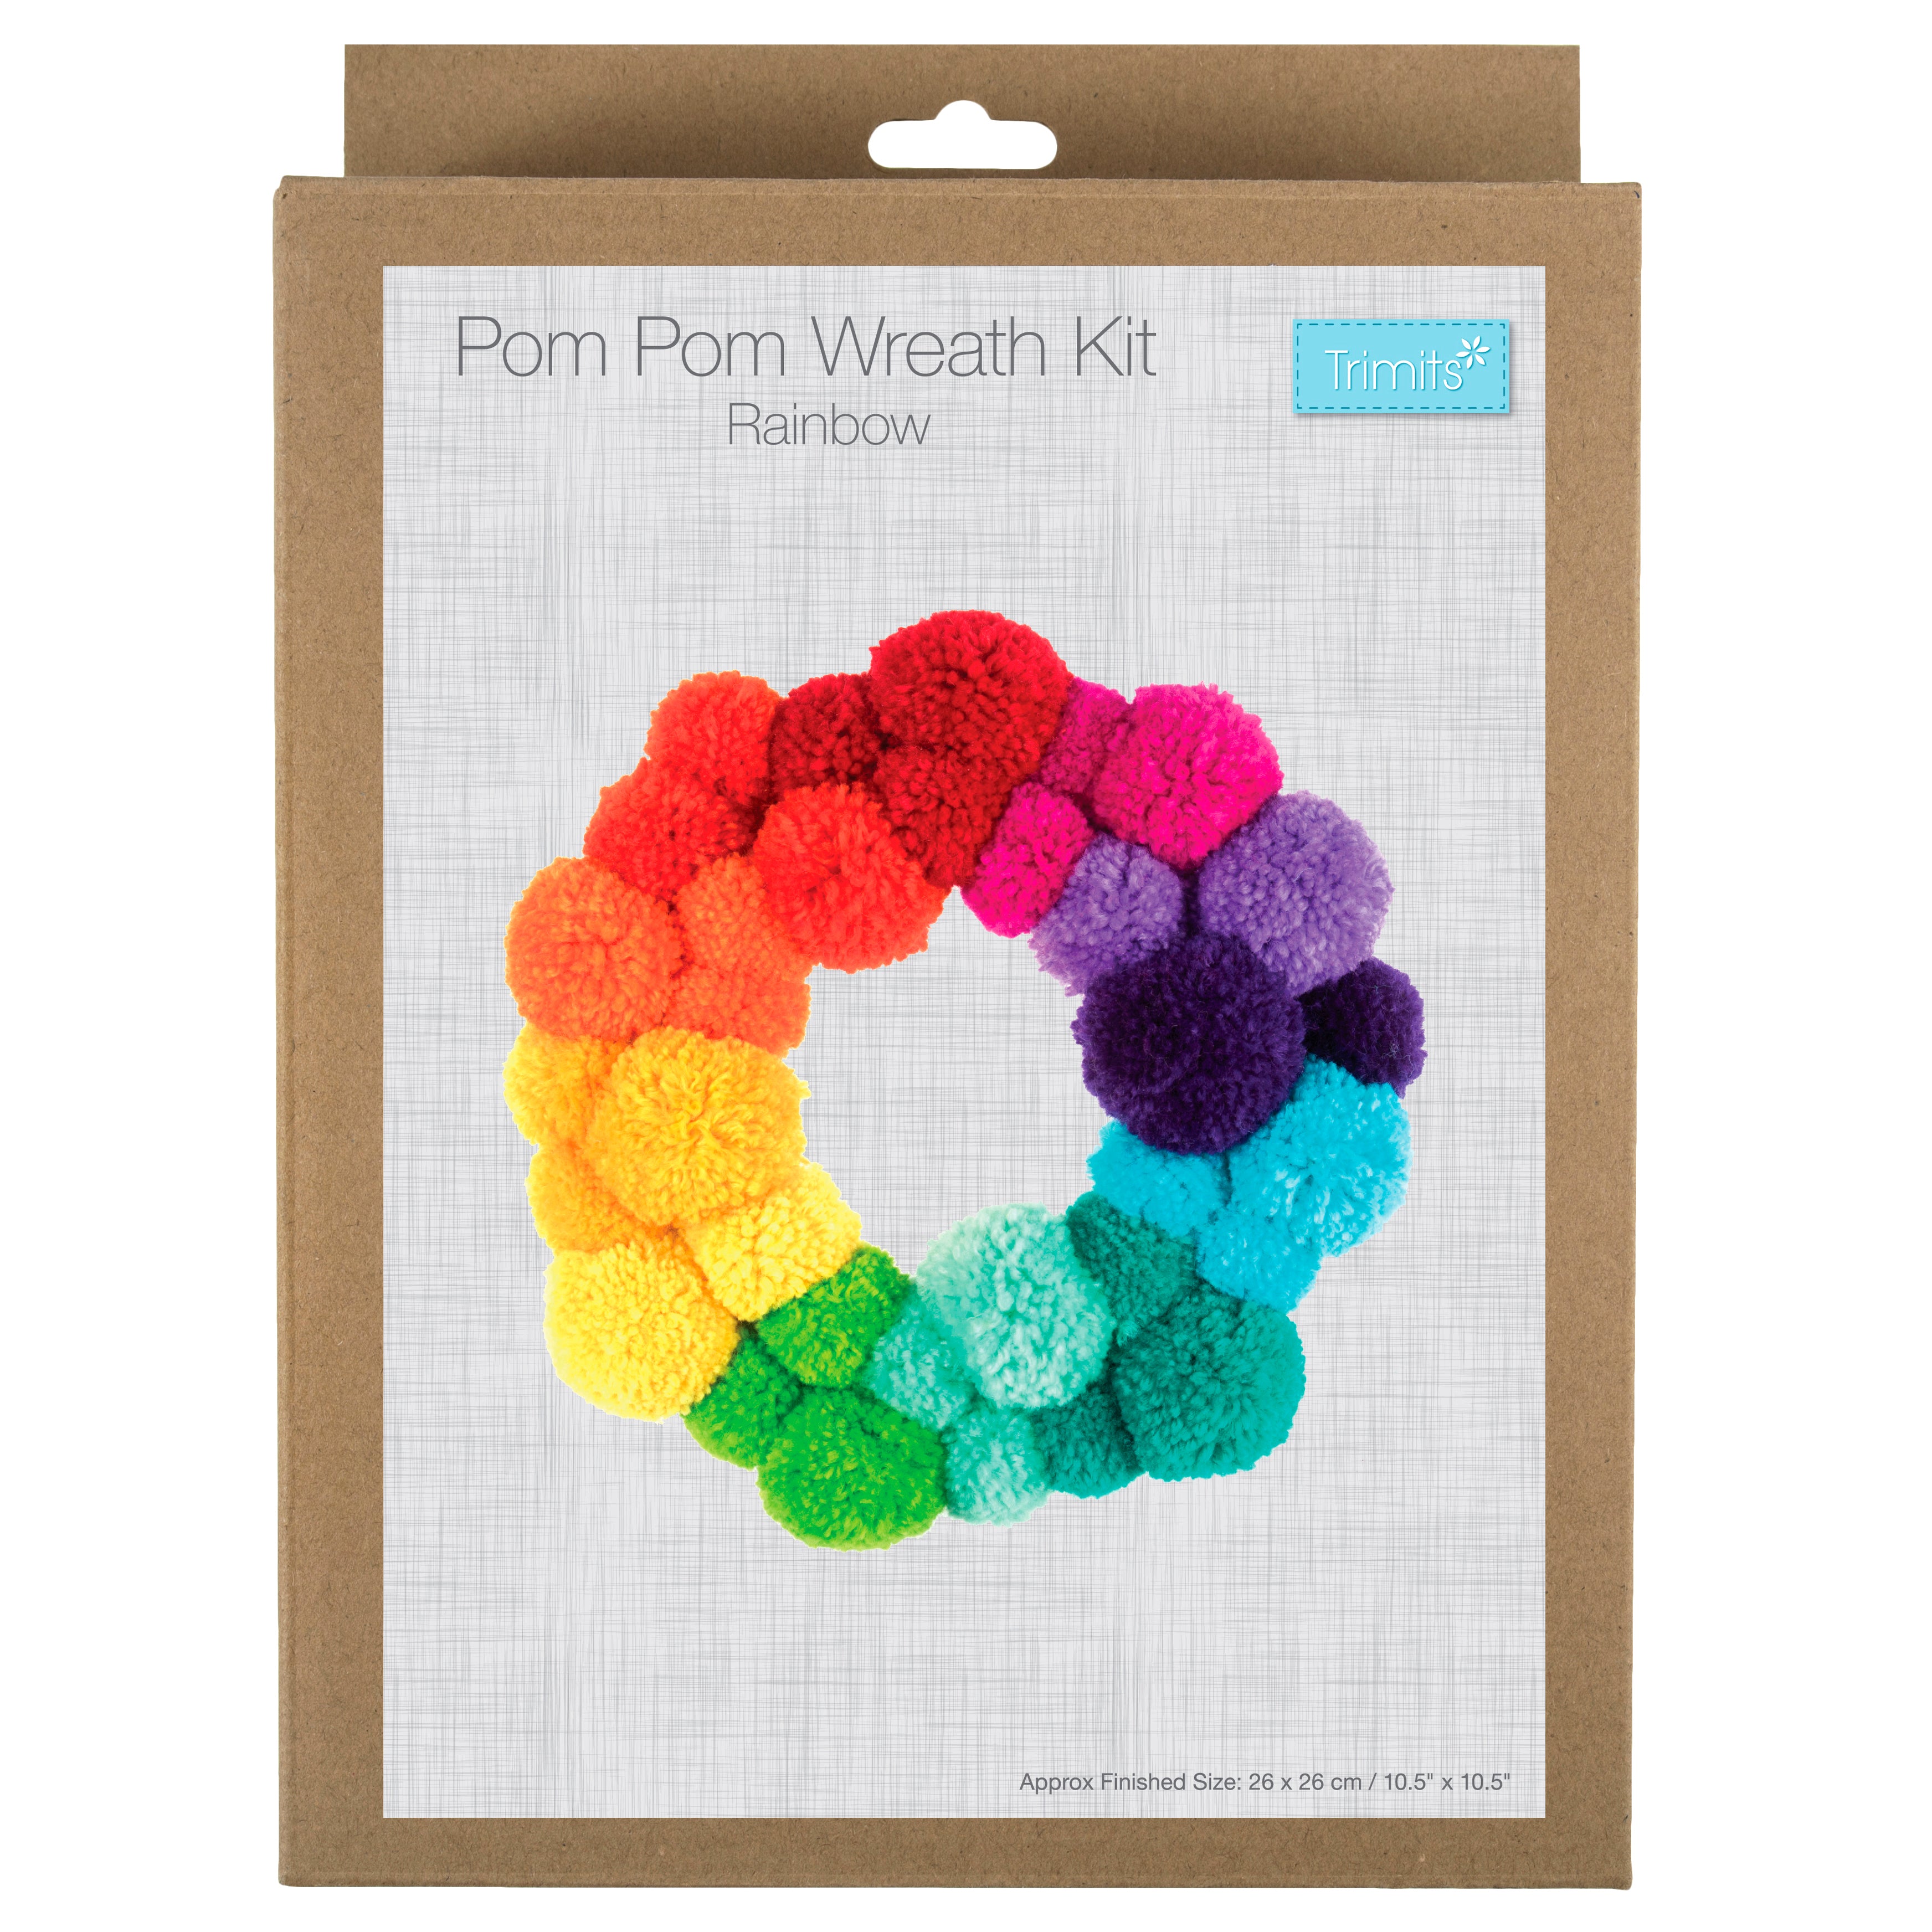 Trimits Pom Pom Wreath Making Kit: Rainbow